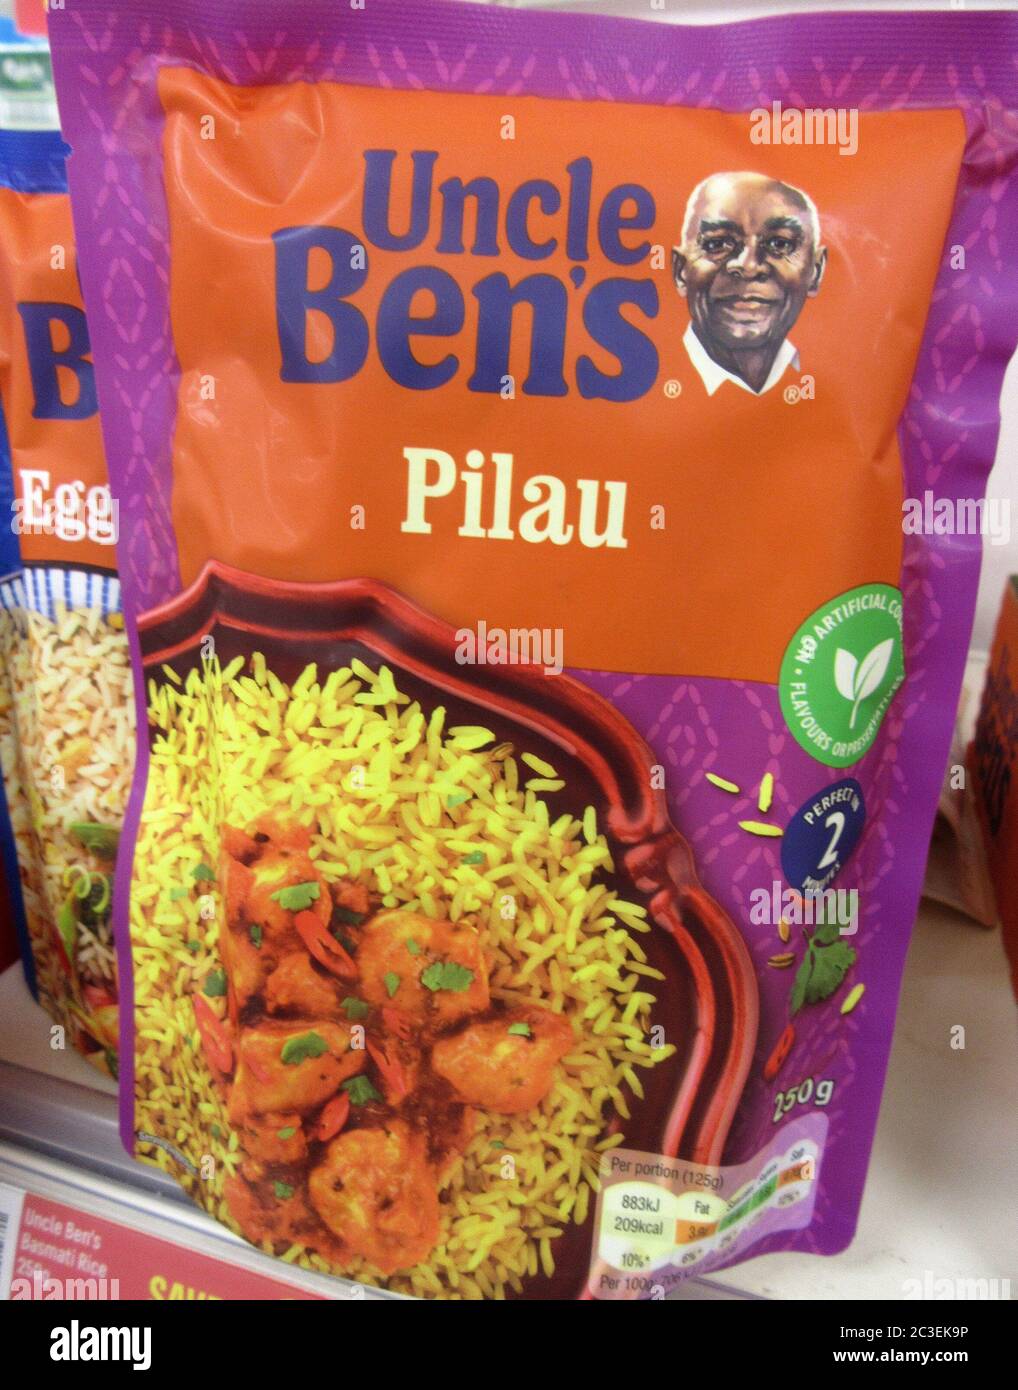 La célèbre marque de riz Uncle Ben's, jugée raciste, va changer de nom et  de look 